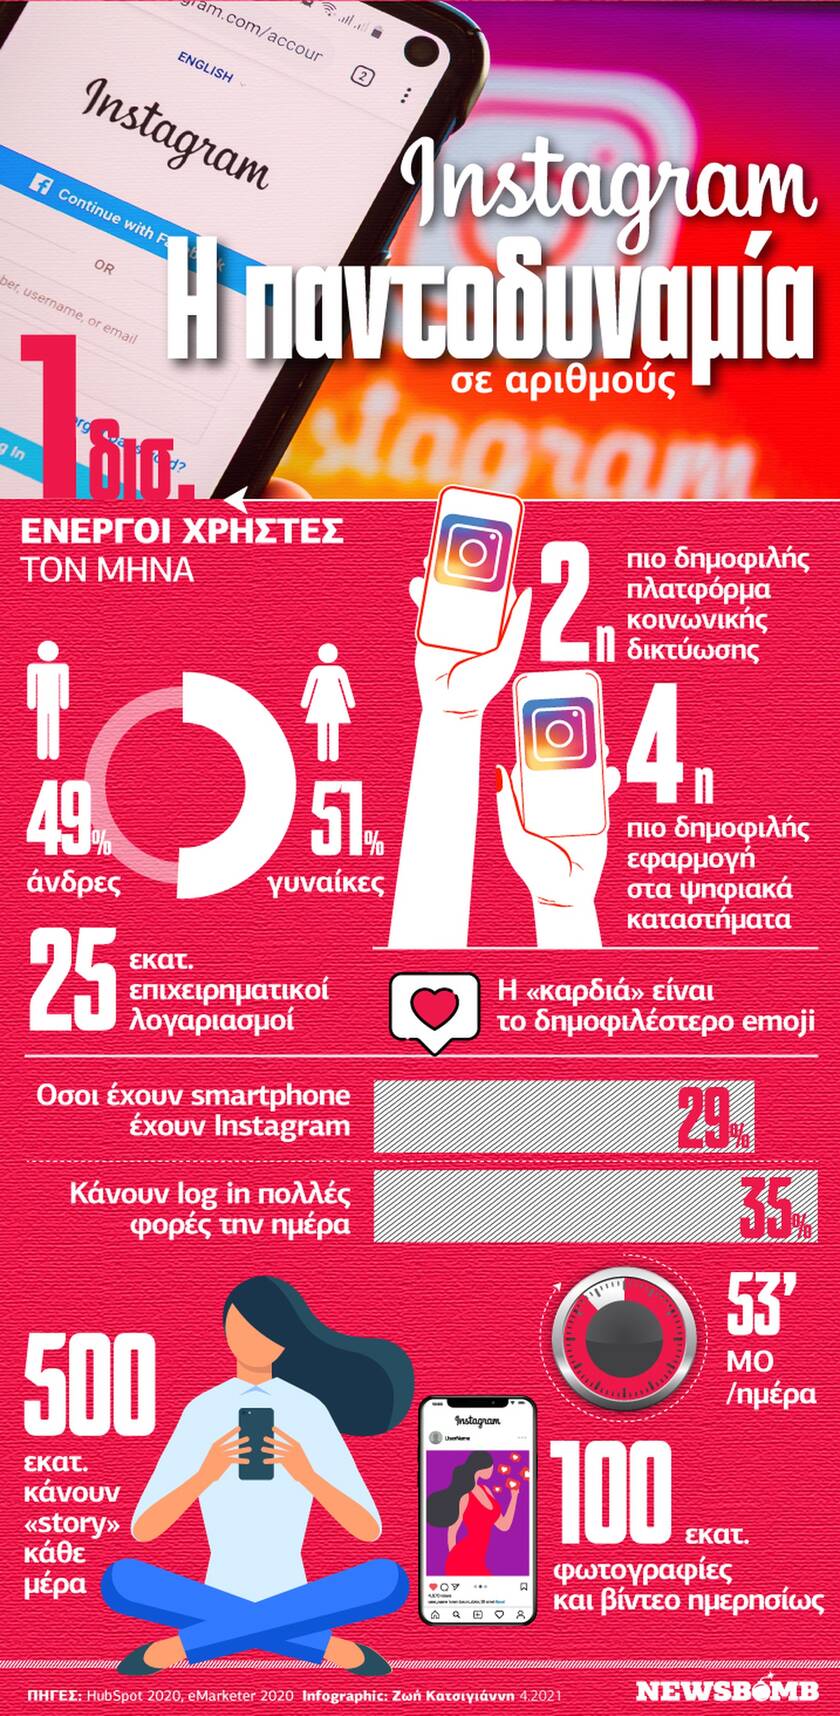 Το Instagram έχει κατακτήσει τον κόσμο; Δείτε το Infographic του Newsbomb.gr